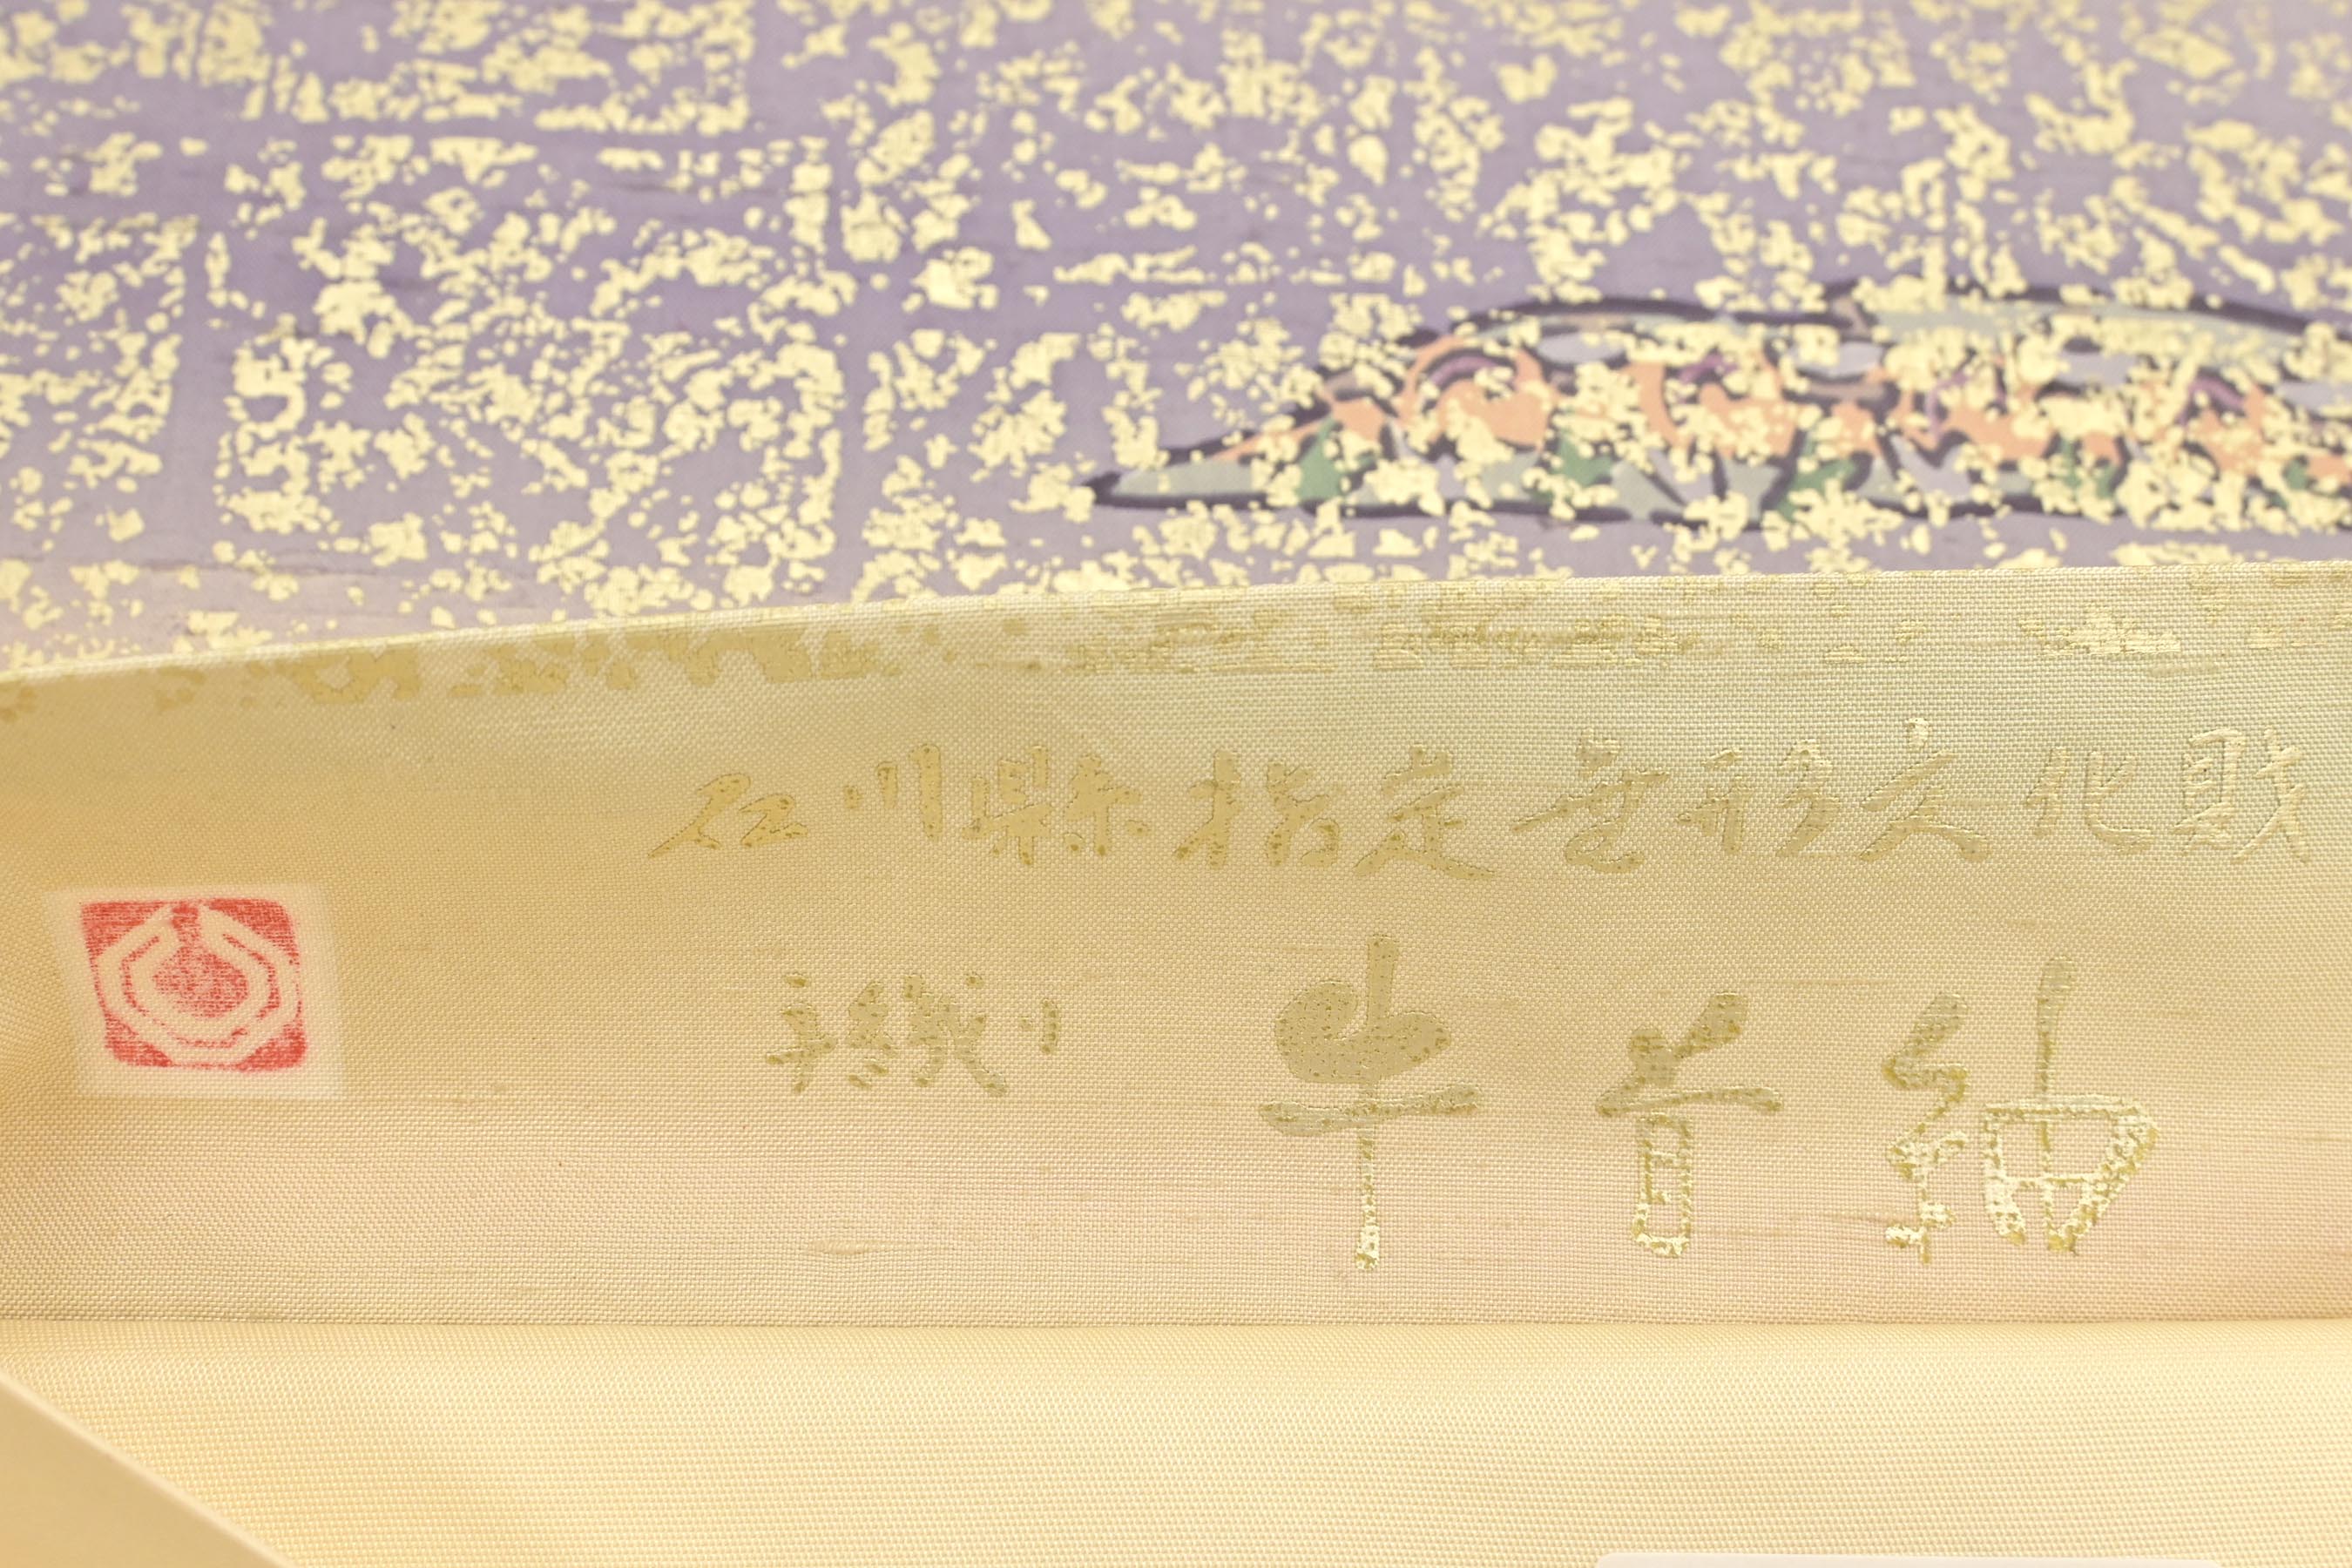 B-0012 石川県無形文化財 牛首紬 袋帯 白 本場牛首 帯 - 着物